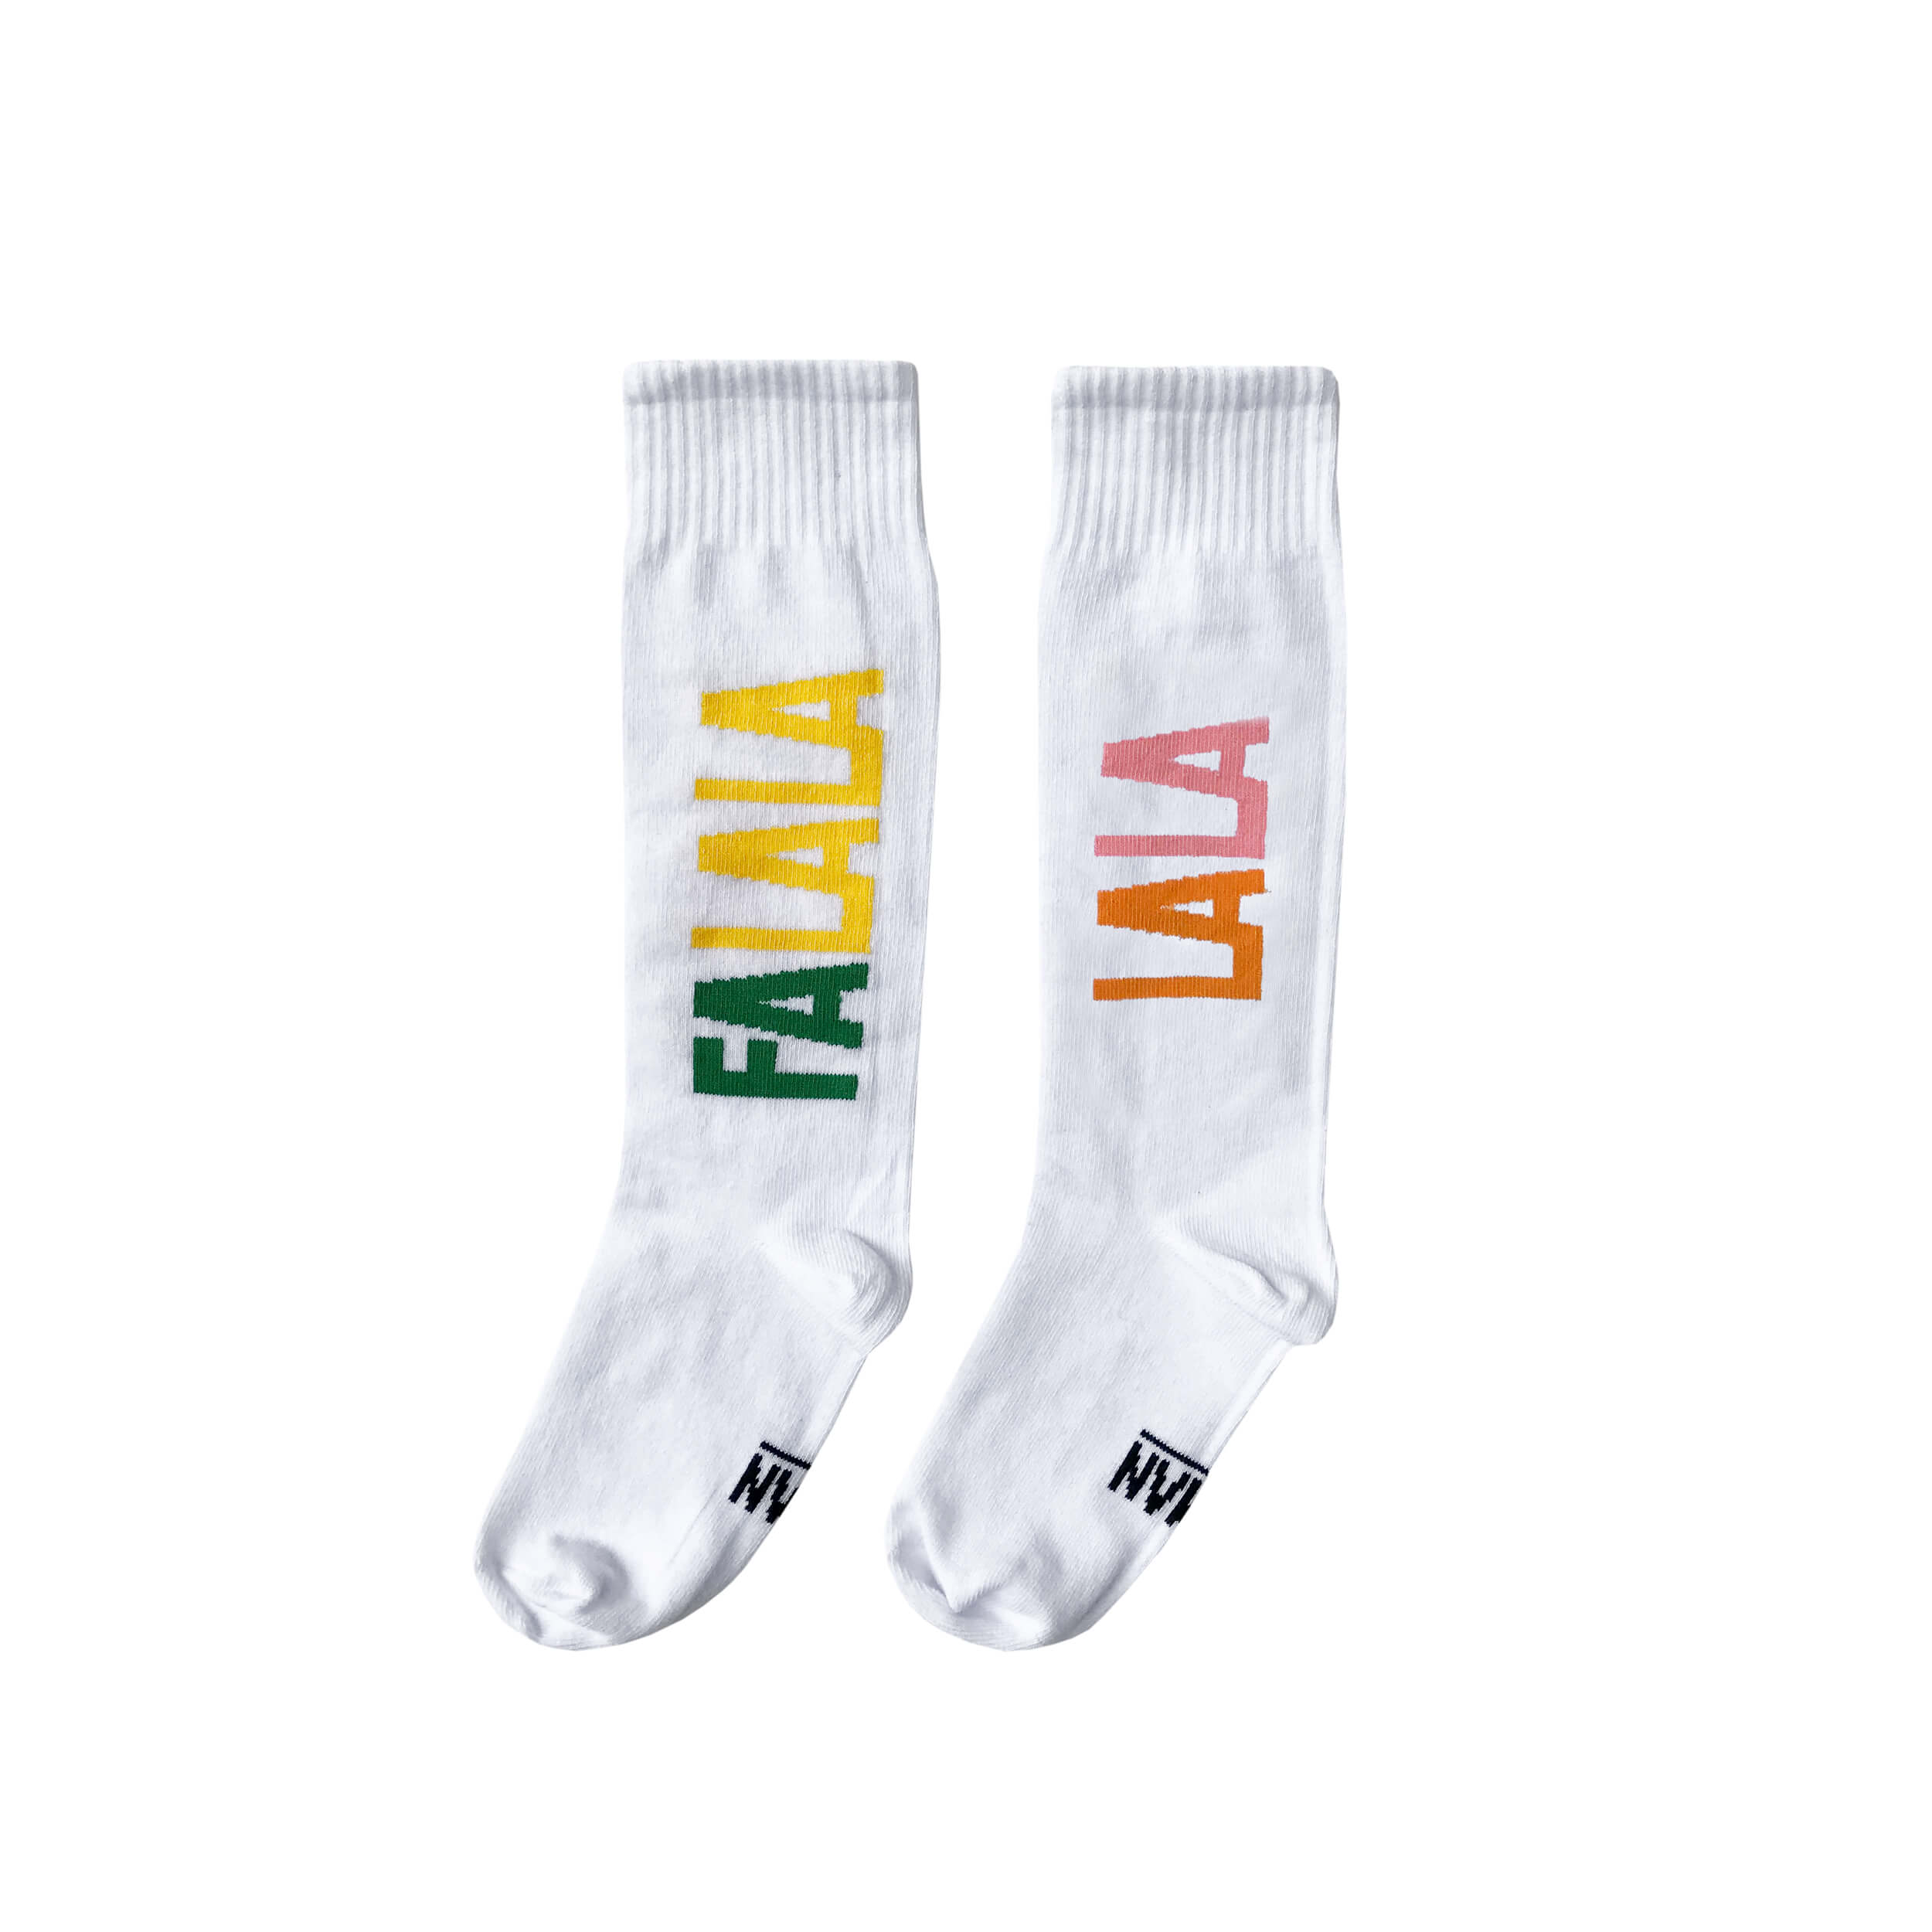 white tennis socks